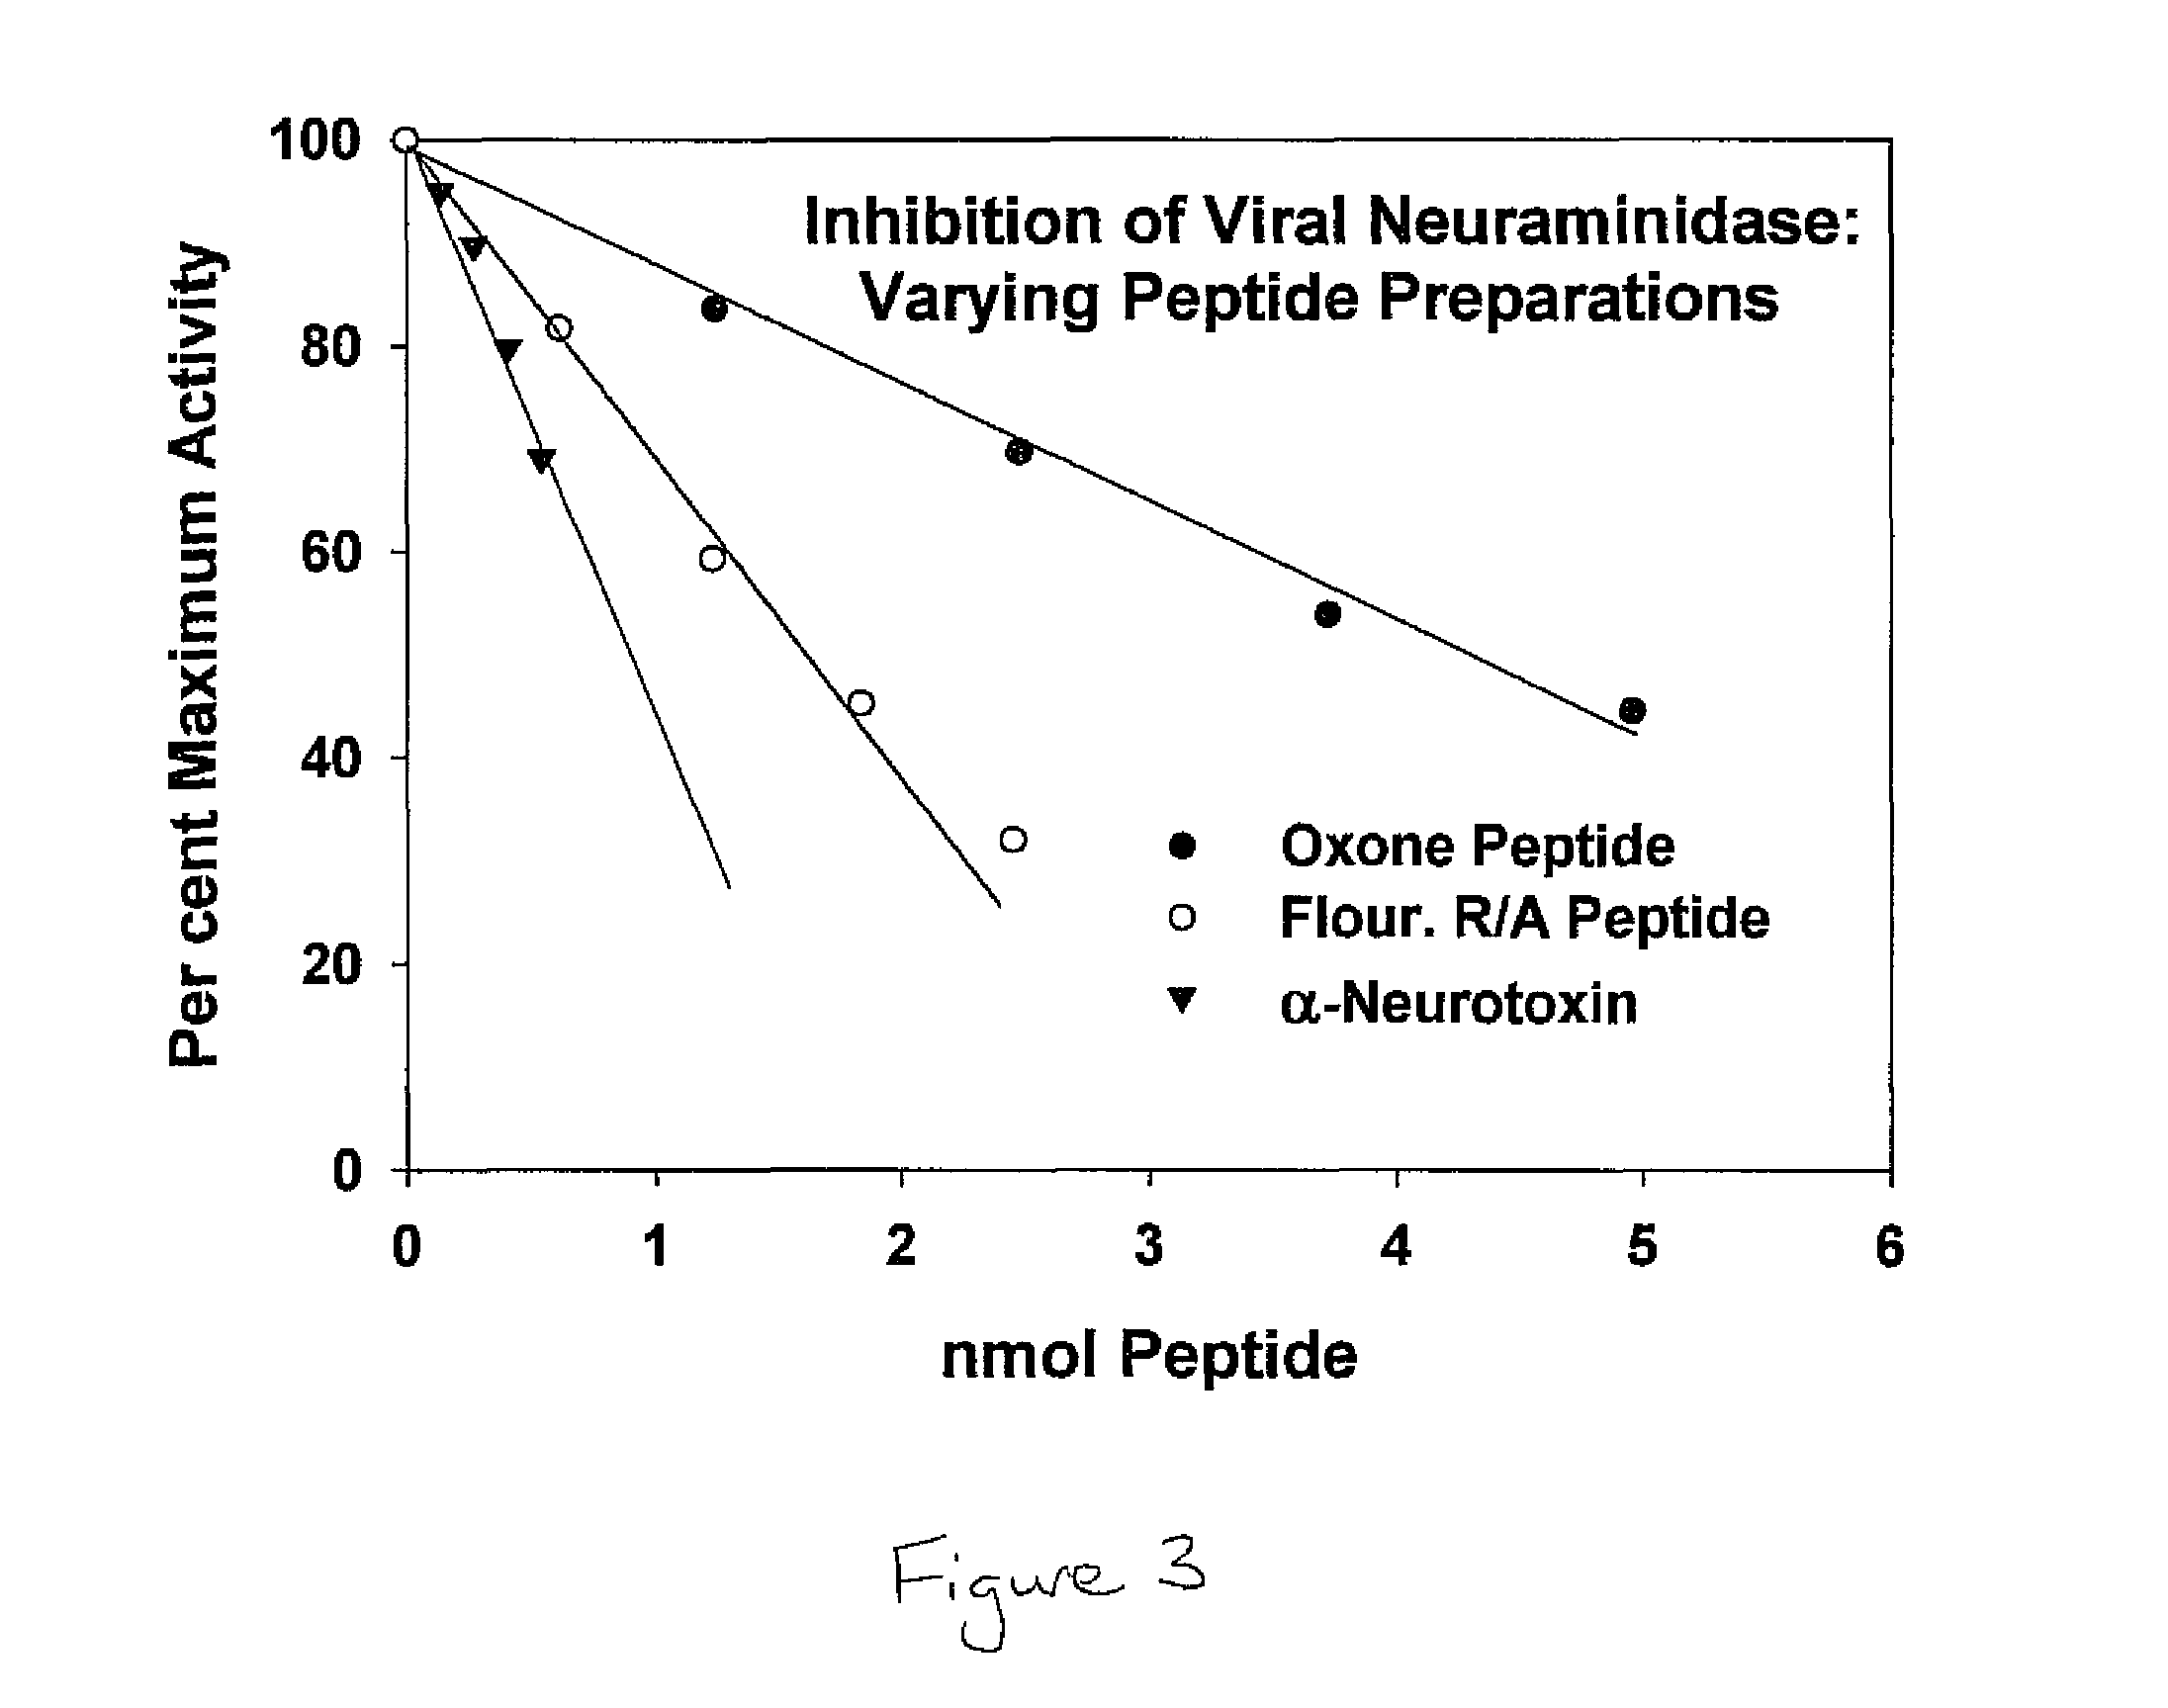 Pan-antiviral peptides